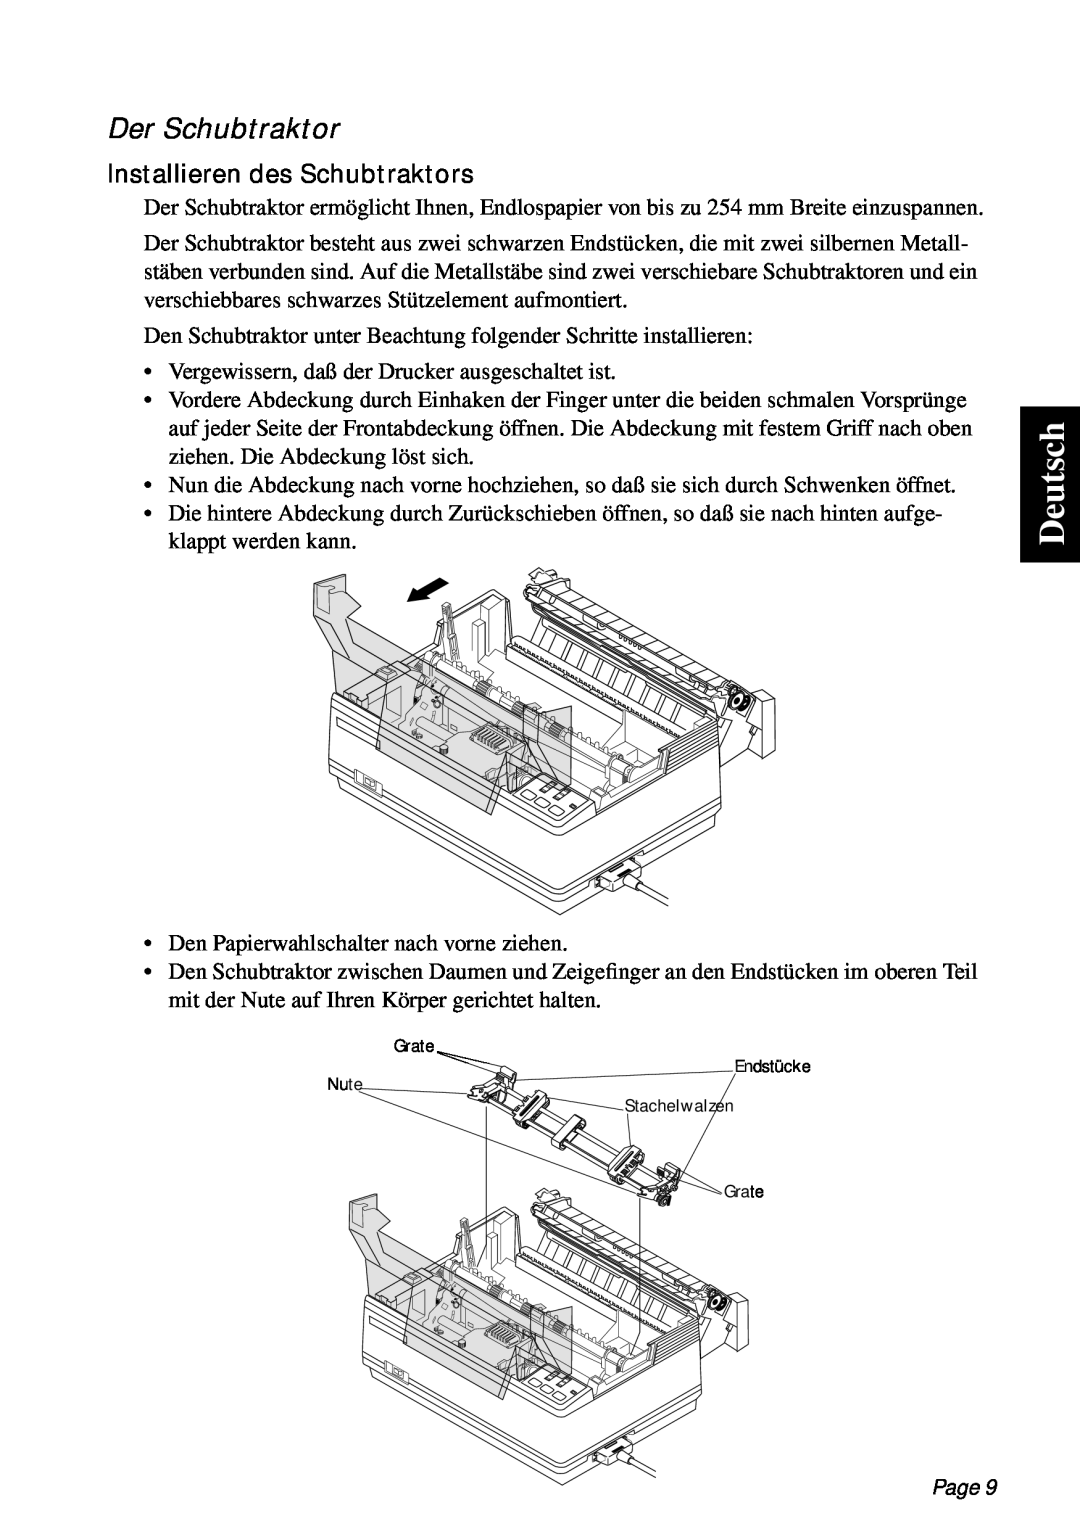 Star Micronics PT-10Q user manual Deutsch, Der Schubtraktor, Installieren des Schubtraktors, Page 